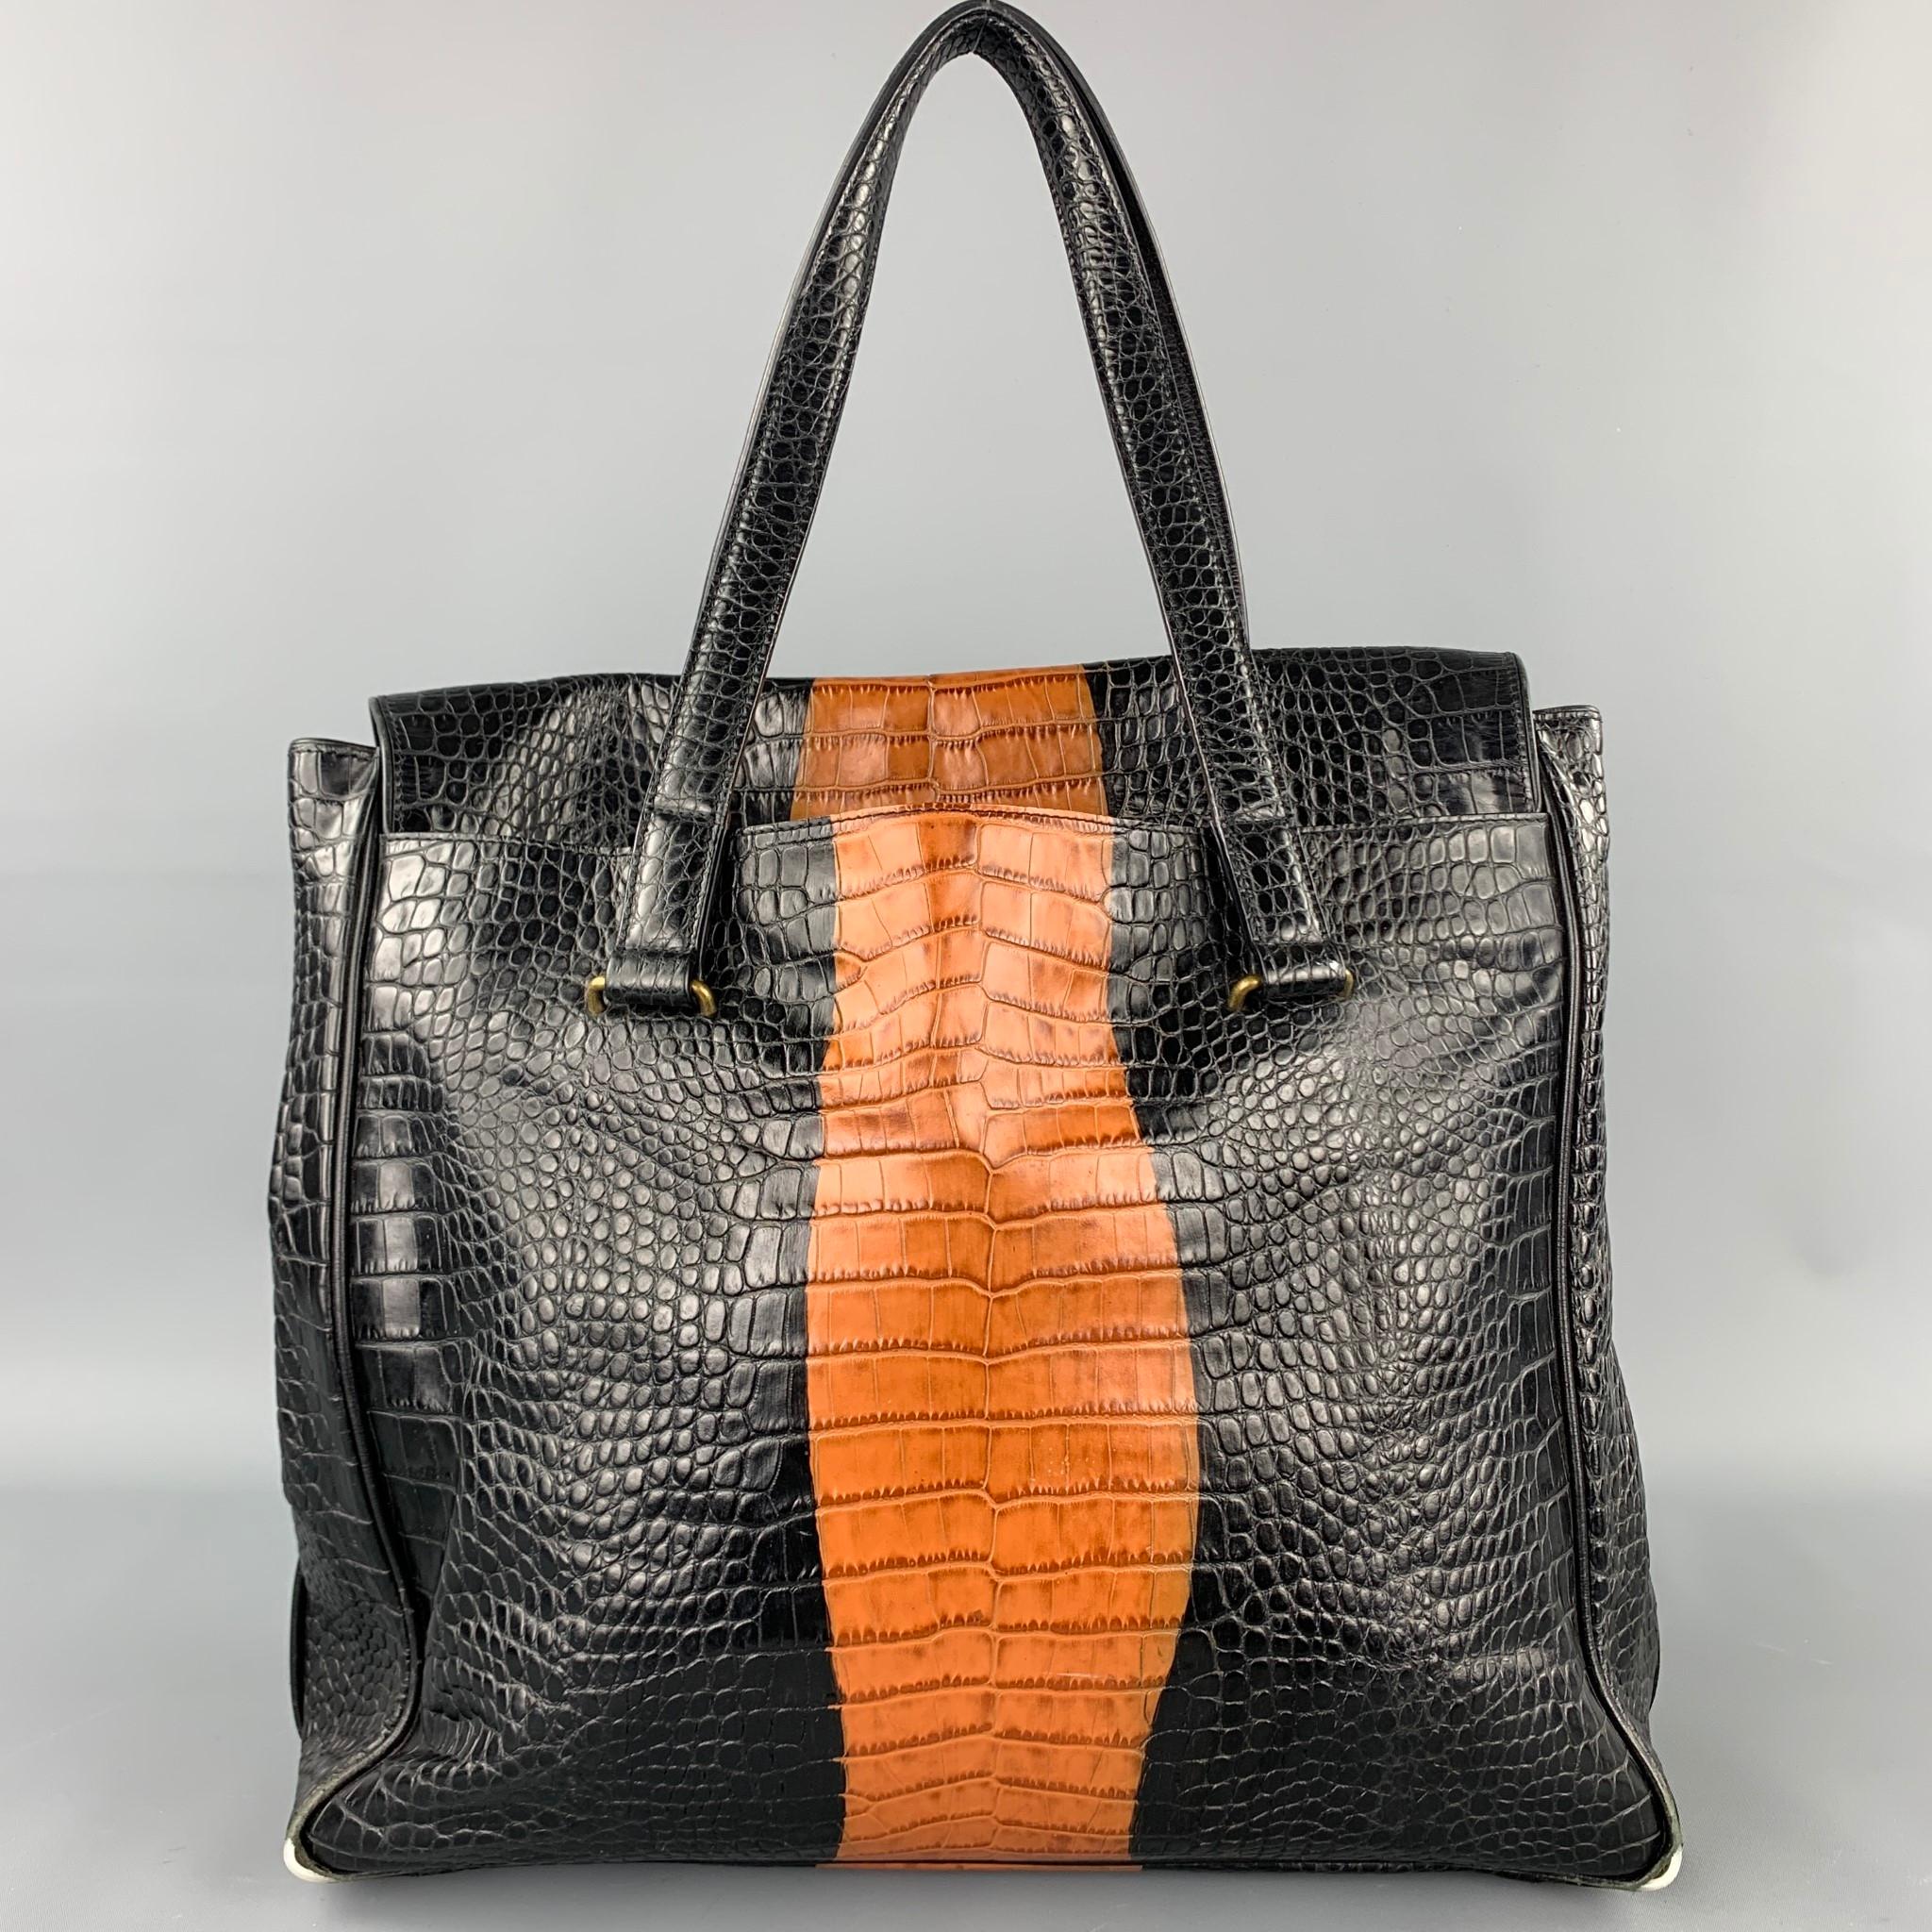 Women's DRIES VAN NOTEN Black & Tan Alligator Embossed Leather Handbag